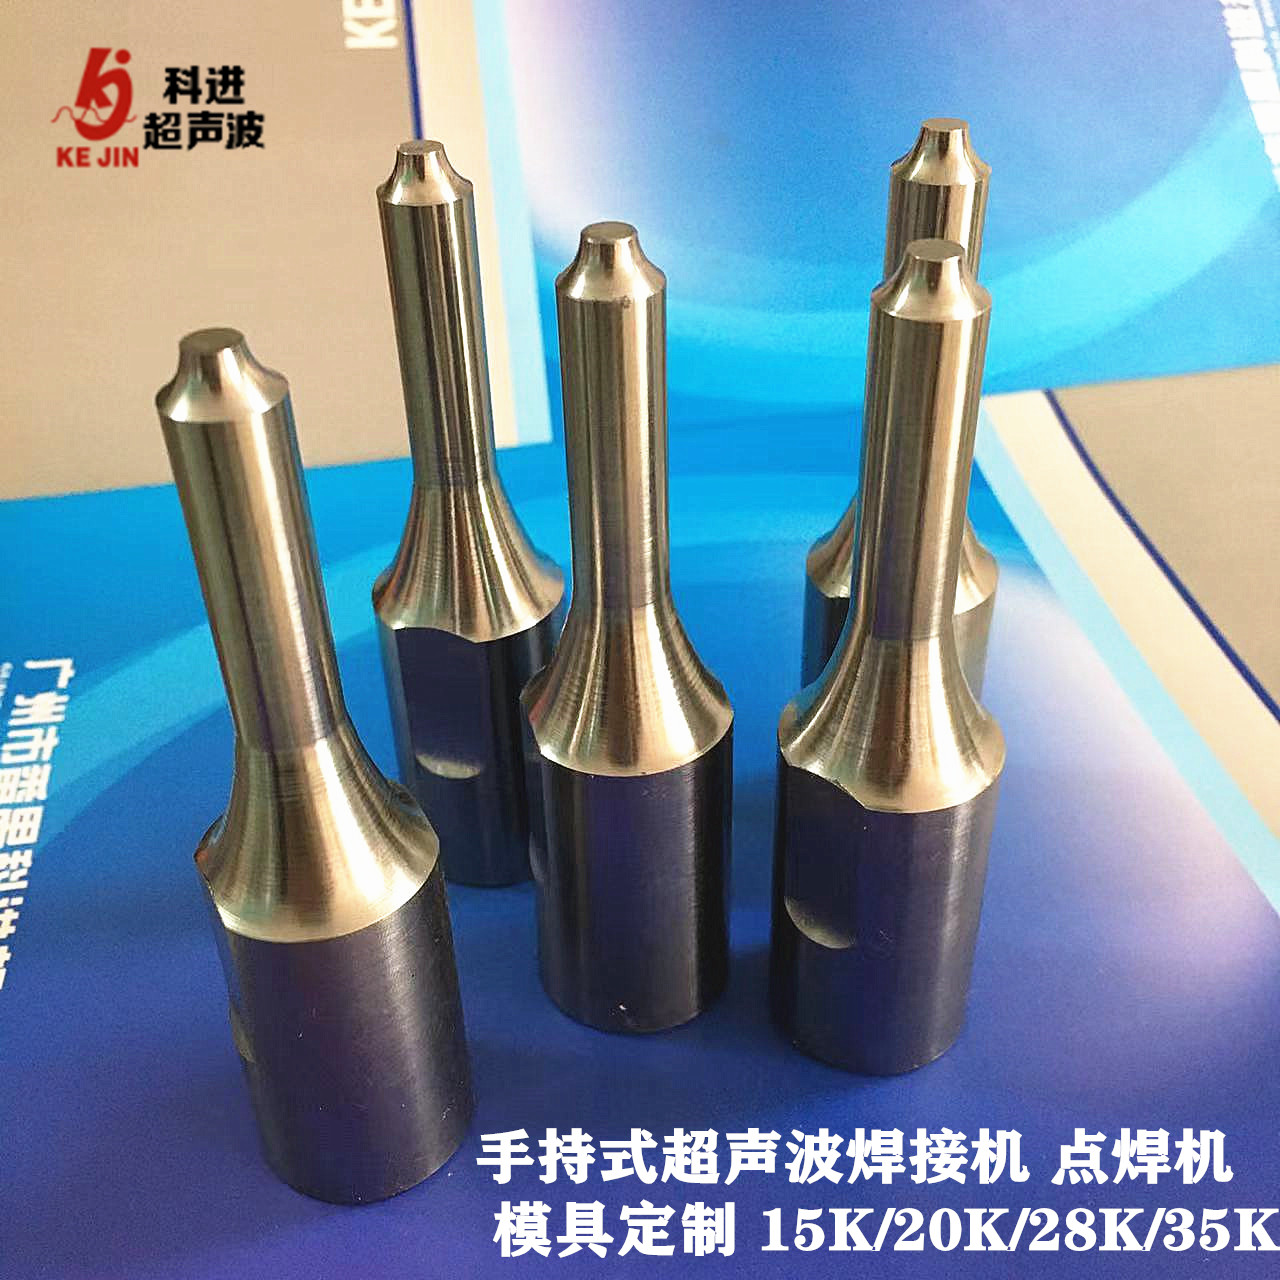 科进手持式超声波焊接机 点焊机模具定制 焊头15K/20K/28K/35K广州发货